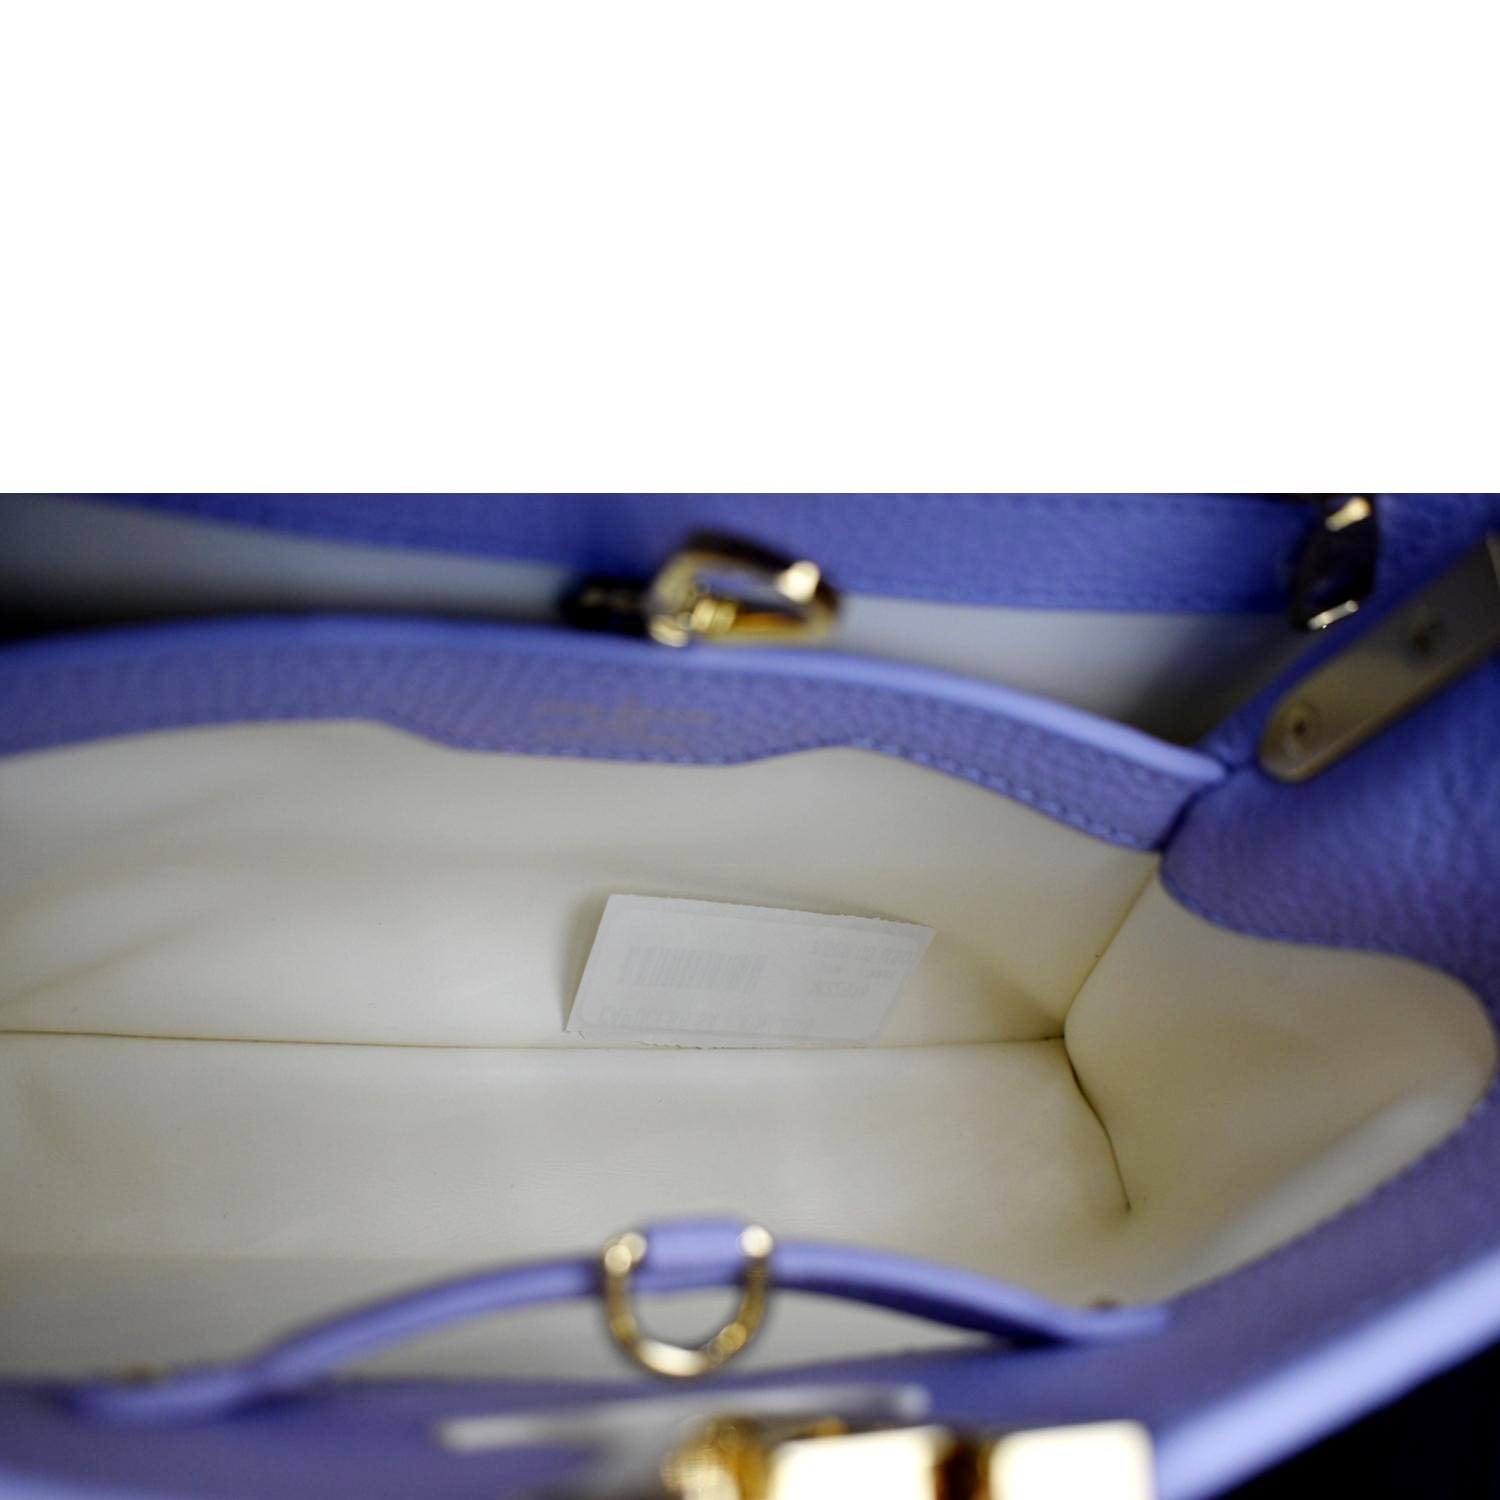 Louis Vuitton Capucines BB Metallic Grey Top Handle Handbag M21102